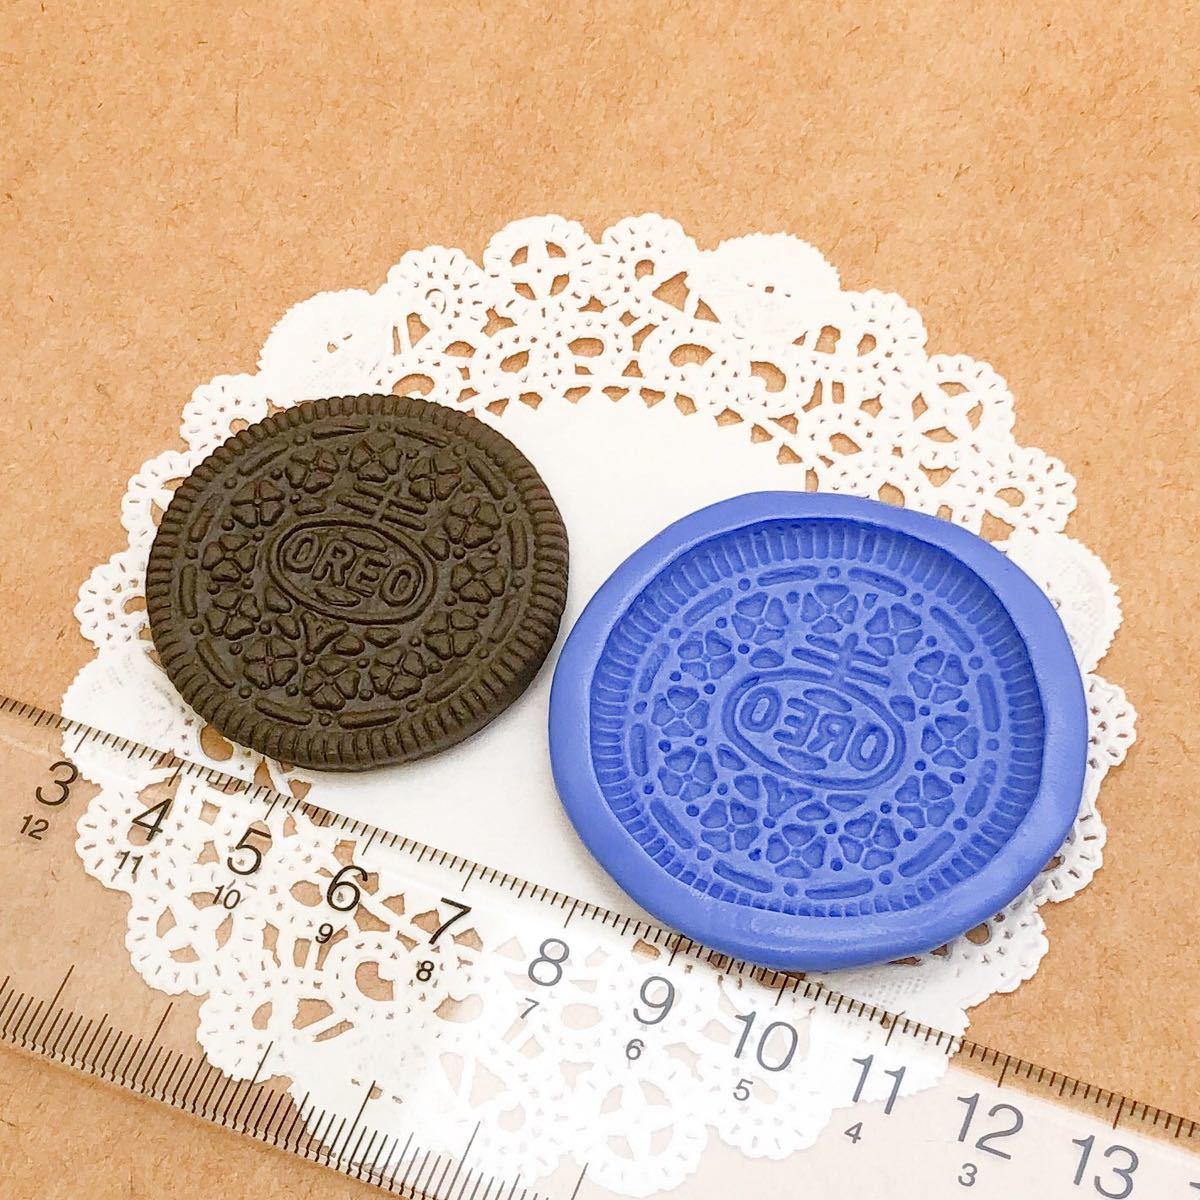 304 オレオ風クッキー型 デコ パーツ 樹脂粘土 チョコクッキー ブルーミックス ビスケット シリコン モールド ハンドメイド ミニチュアの画像4